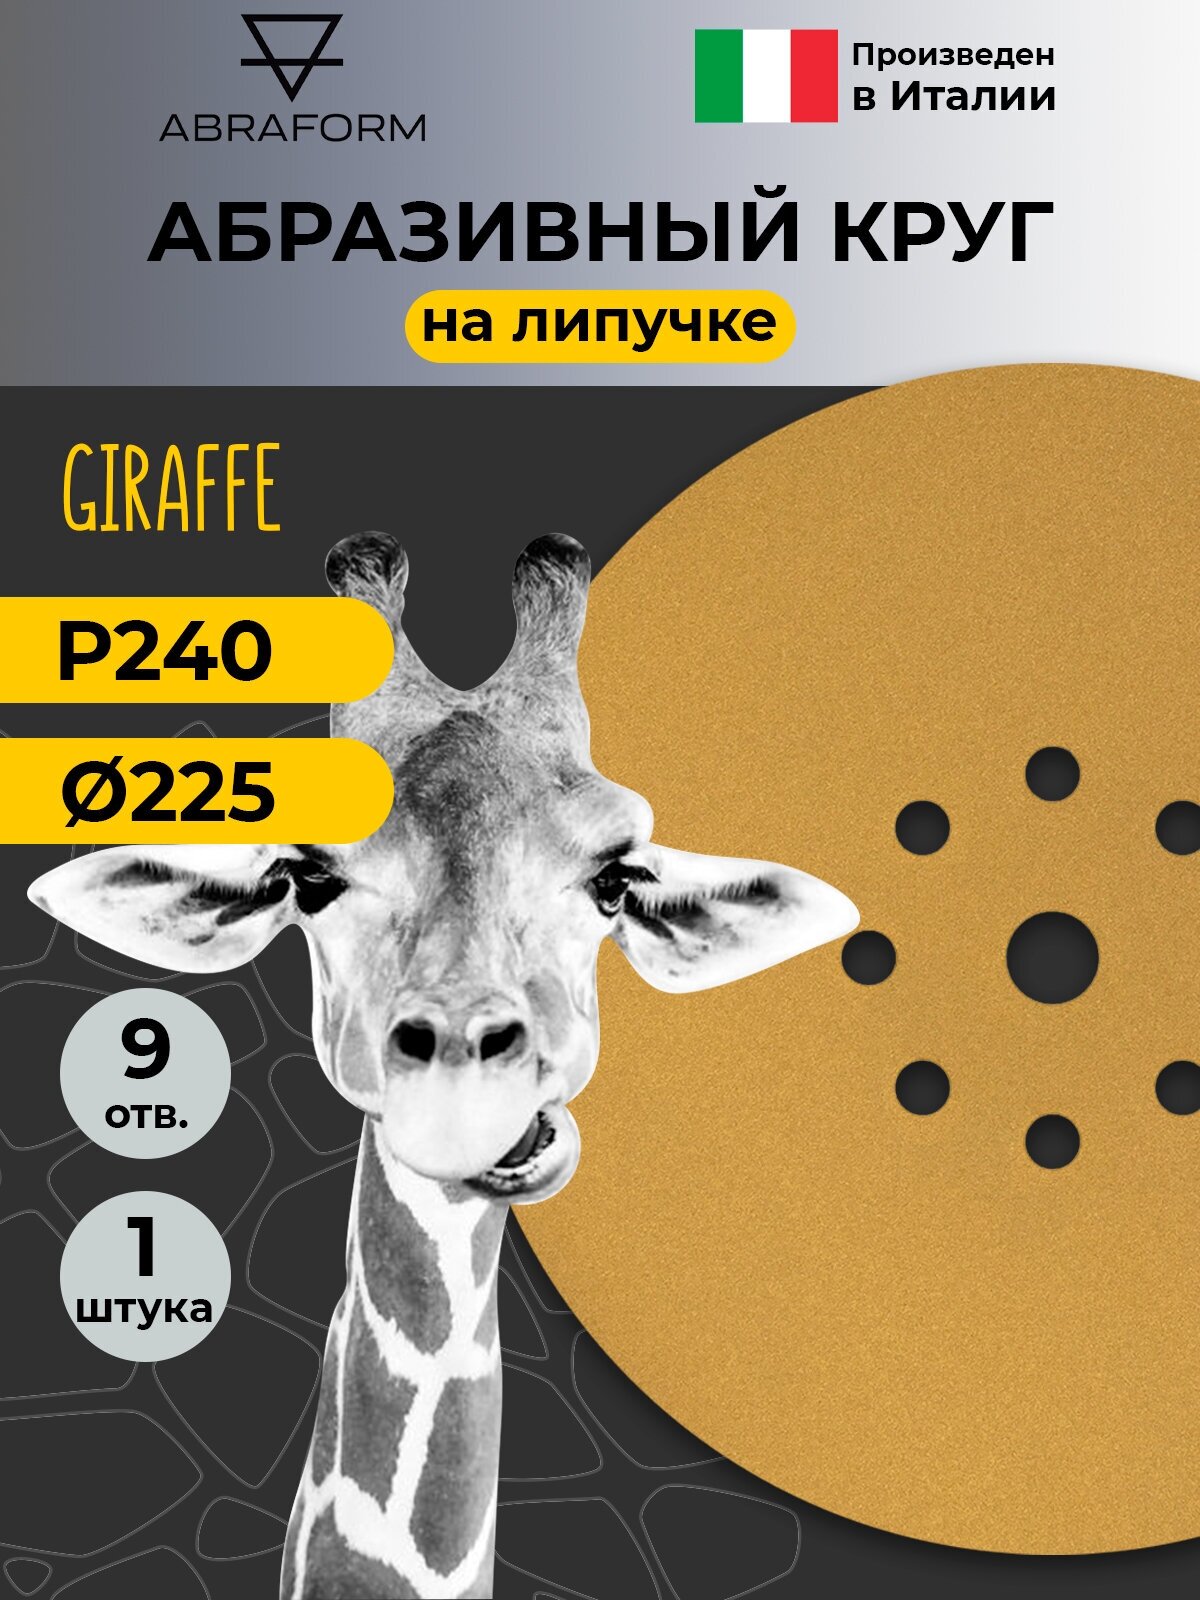 Шлифовальный круг на липучке ABRAFORM - 1 шт, 225 мм, 9 отв, Р 240 для шлифовальной машинки жираф для стен и потолков, наждачный абразивный круг